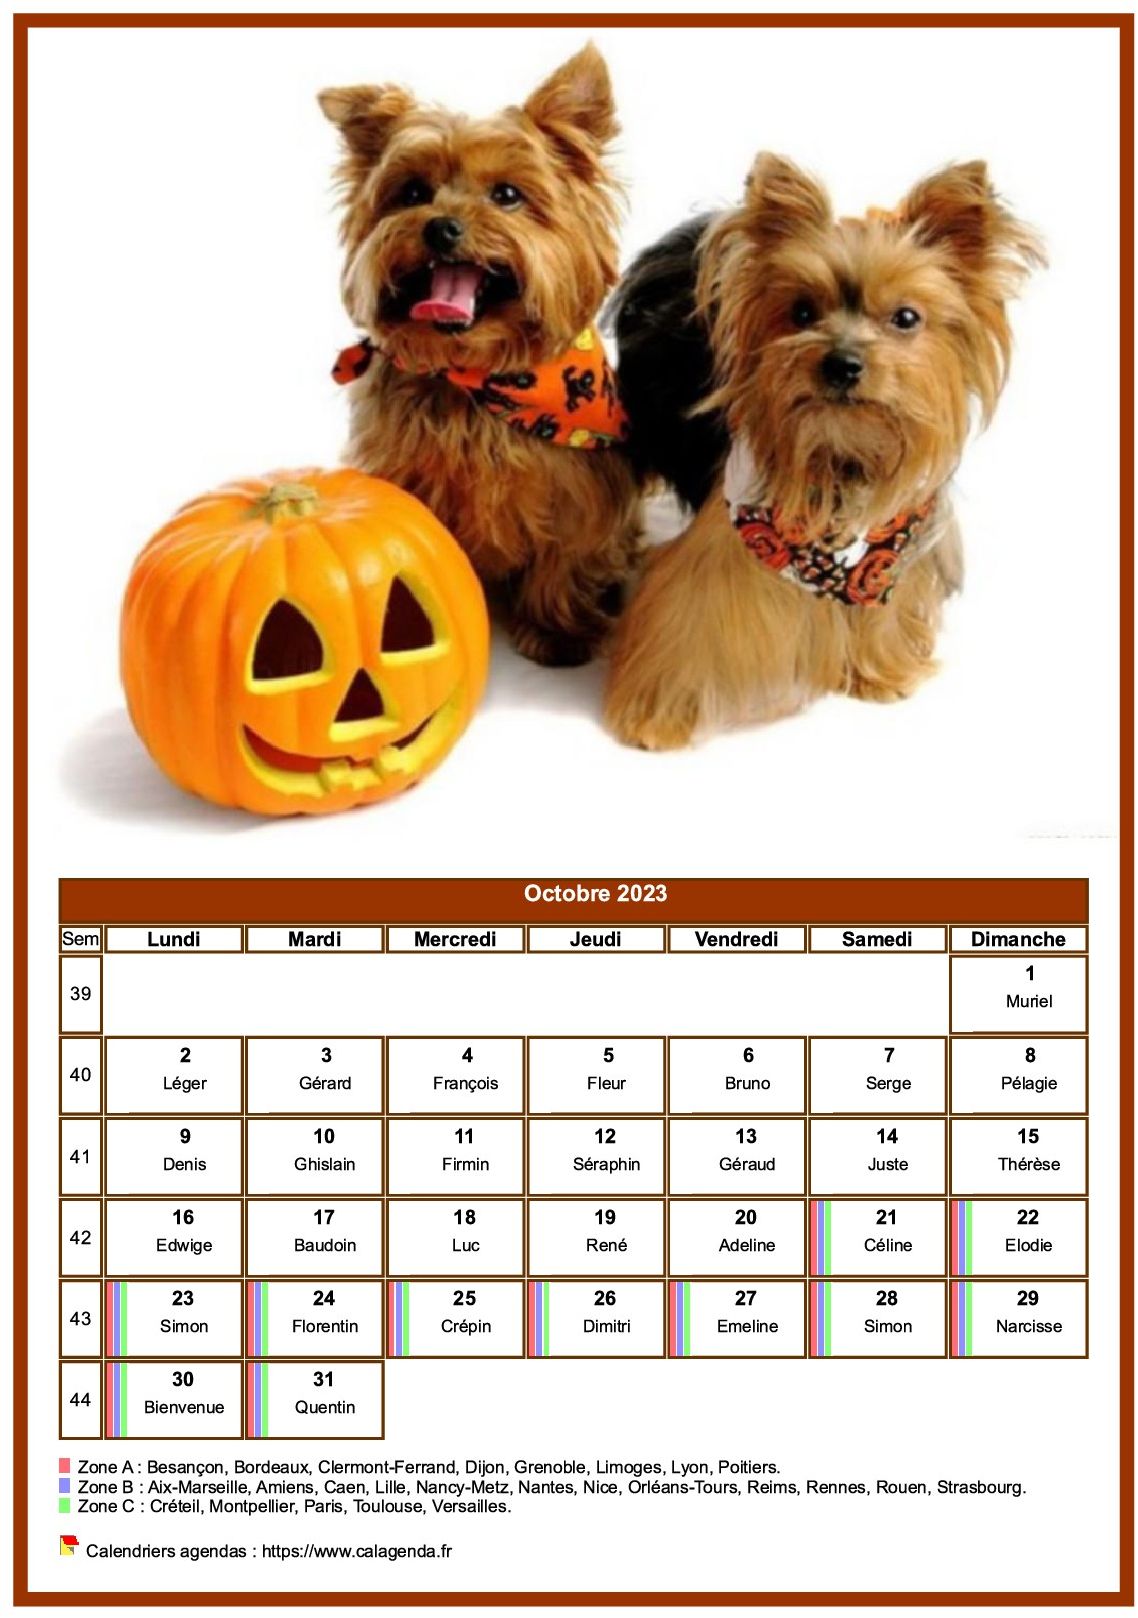 Calendrier octobre chiens